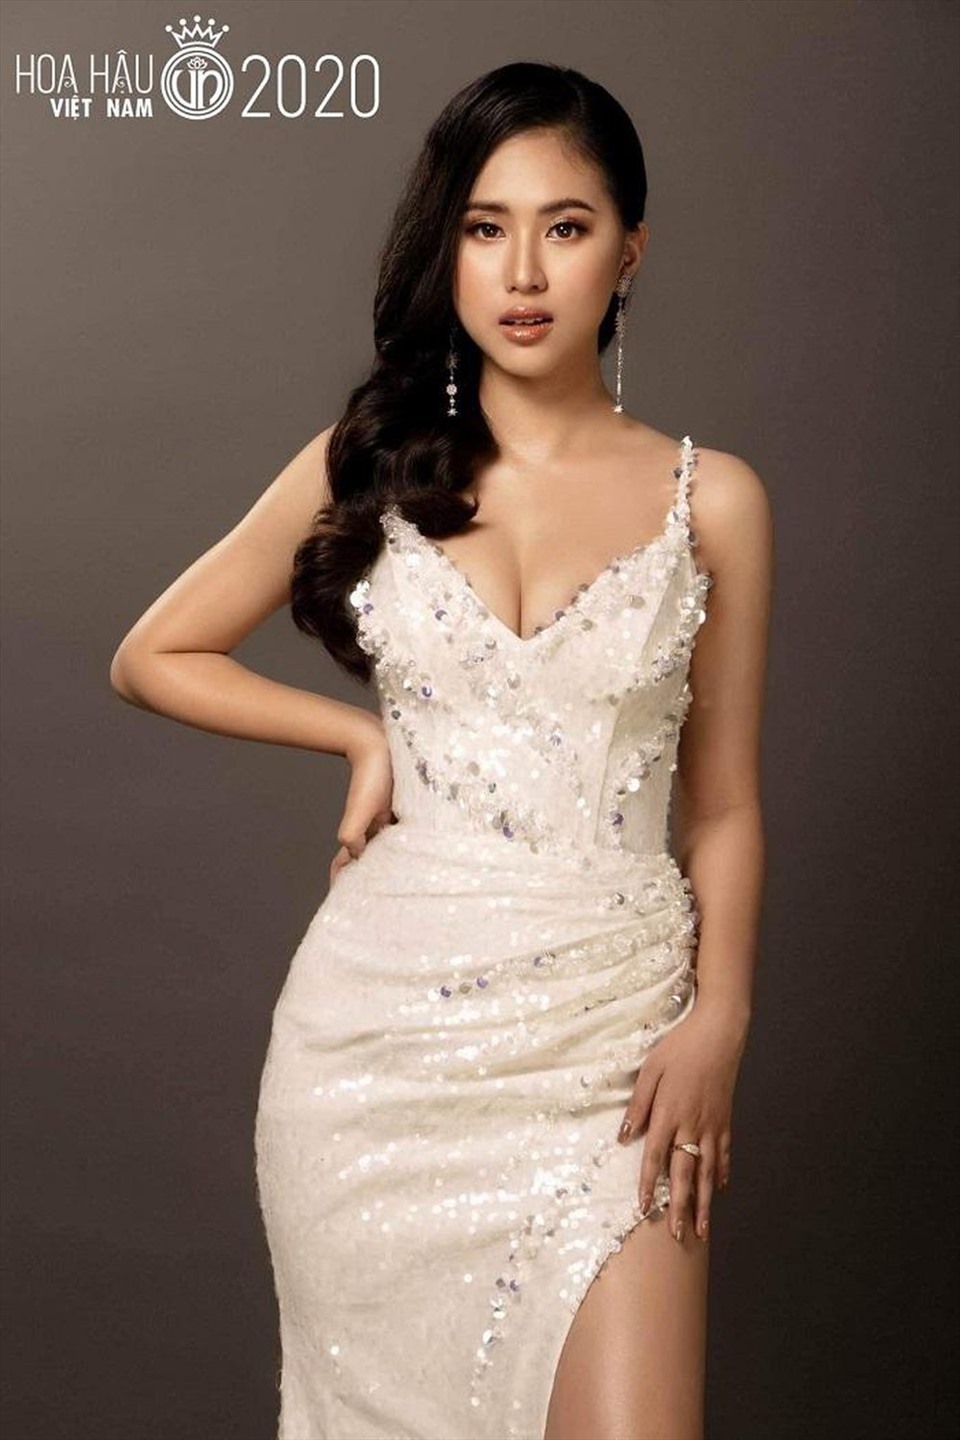 Bảo Nghi cho rằng Hoa hậu Việt Nam 2020 là một trải nghiệm mới đối với bản thân. Mặc dù vậy, cô sẽ đặt ra mục tiêu cụ thể cho bản thân để nghiêm túc nỗ lực, vươn tới thành công. Ảnh: NVCC.